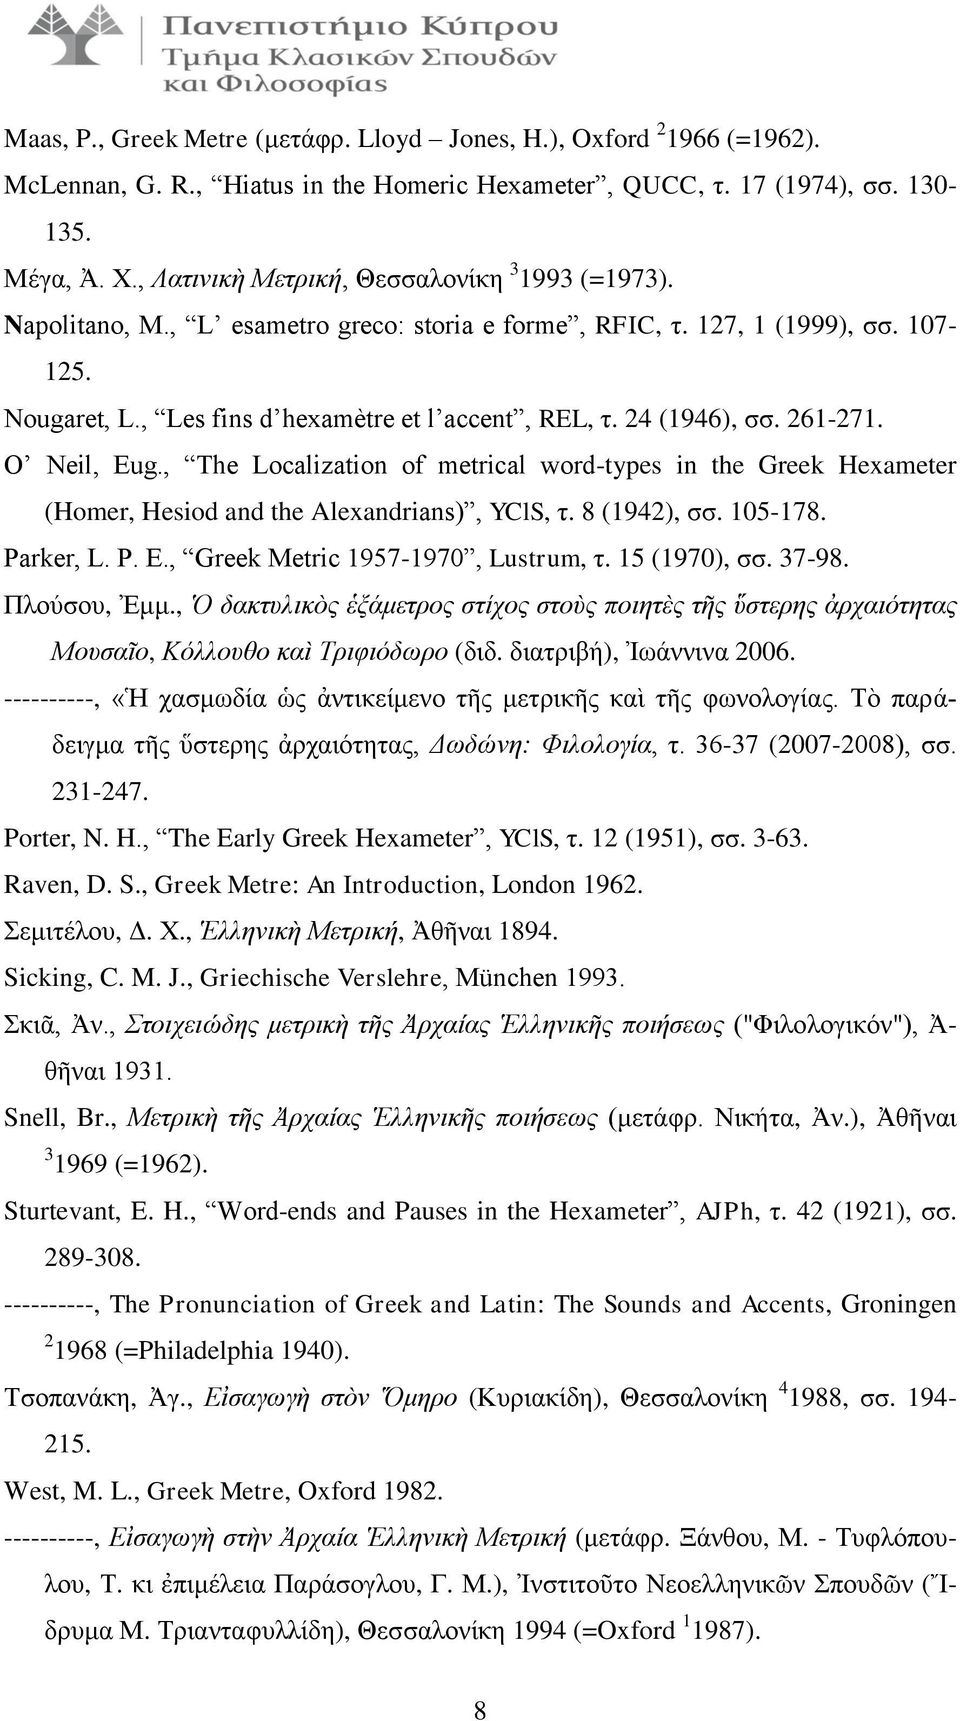 24 (1946), σσ. 261-271. O Neil, Eug., The Localization of metrical word-types in the Greek Hexameter (Homer, Hesiod and the Alexandrians), YClS, τ. 8 (1942), σσ. 105-178. Parker, L. P. E., Greek Metric 1957-1970, Lustrum, τ.